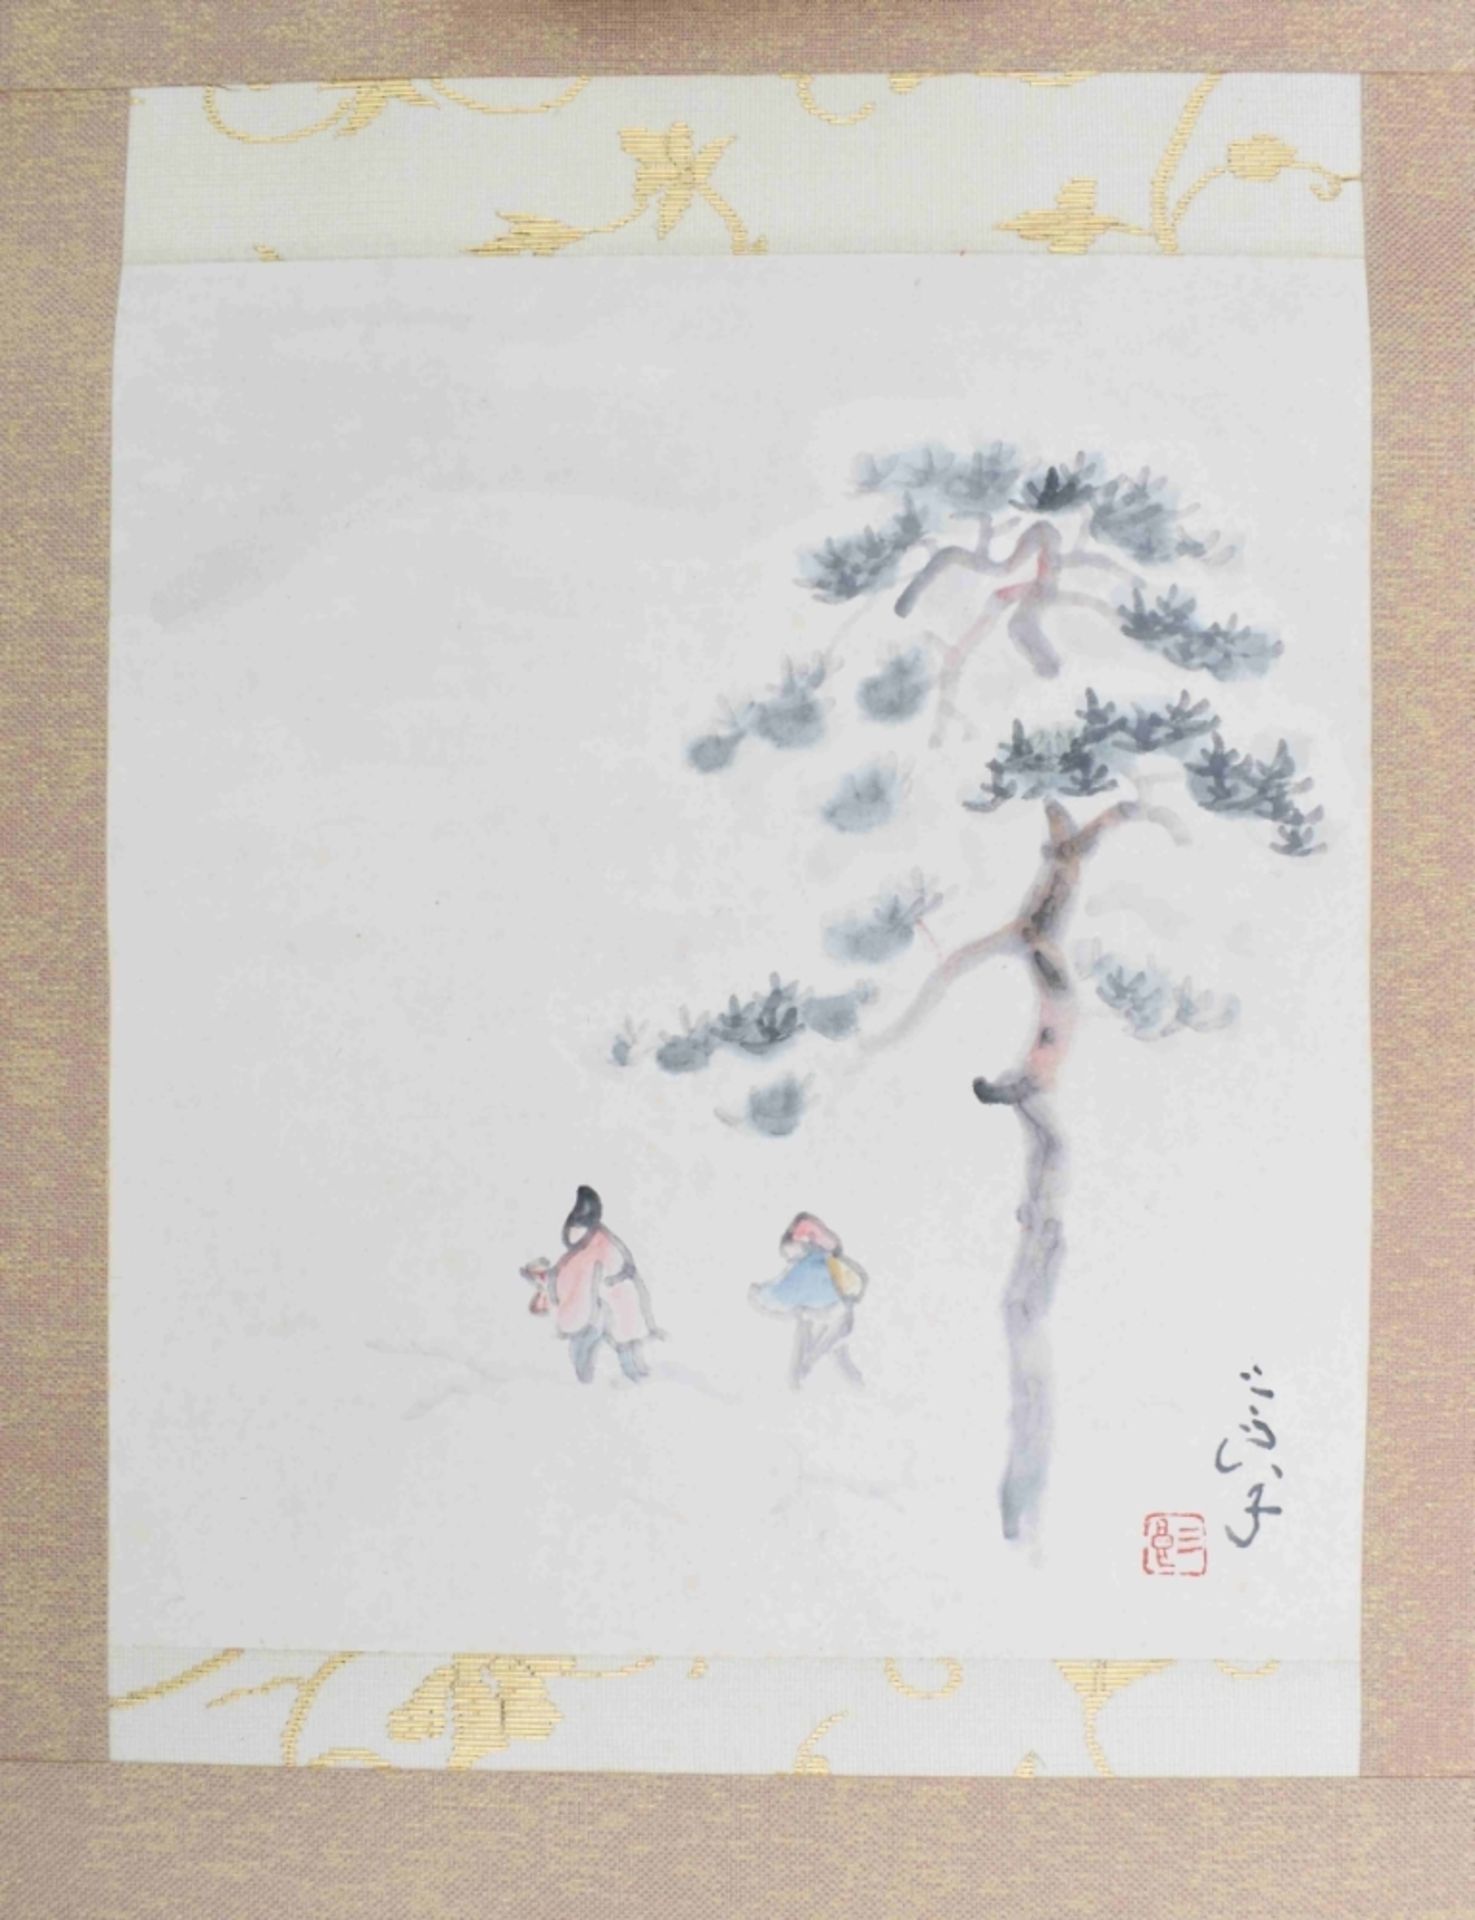 Hängerolle mit Wanderern unter einem Kiefernbaum, Japan, 20. Jh. - Bild 2 aus 5